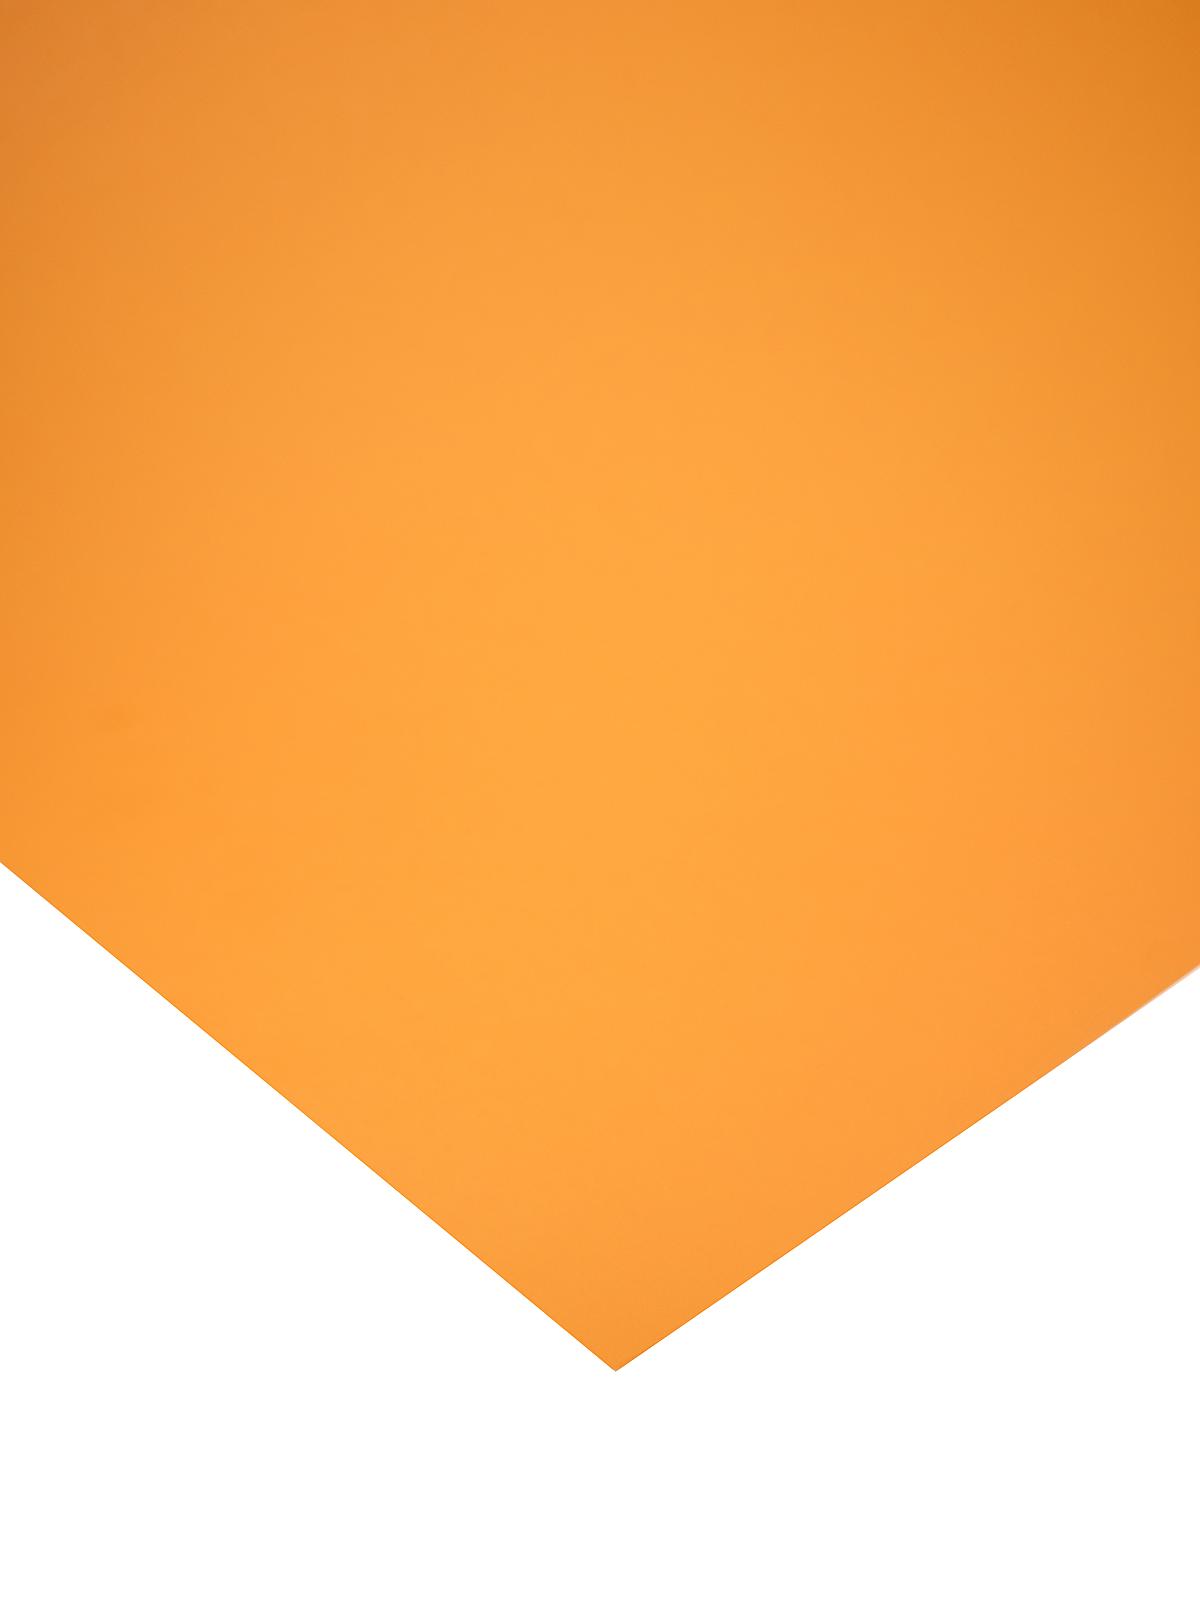 The Heavy Poster Board Orange